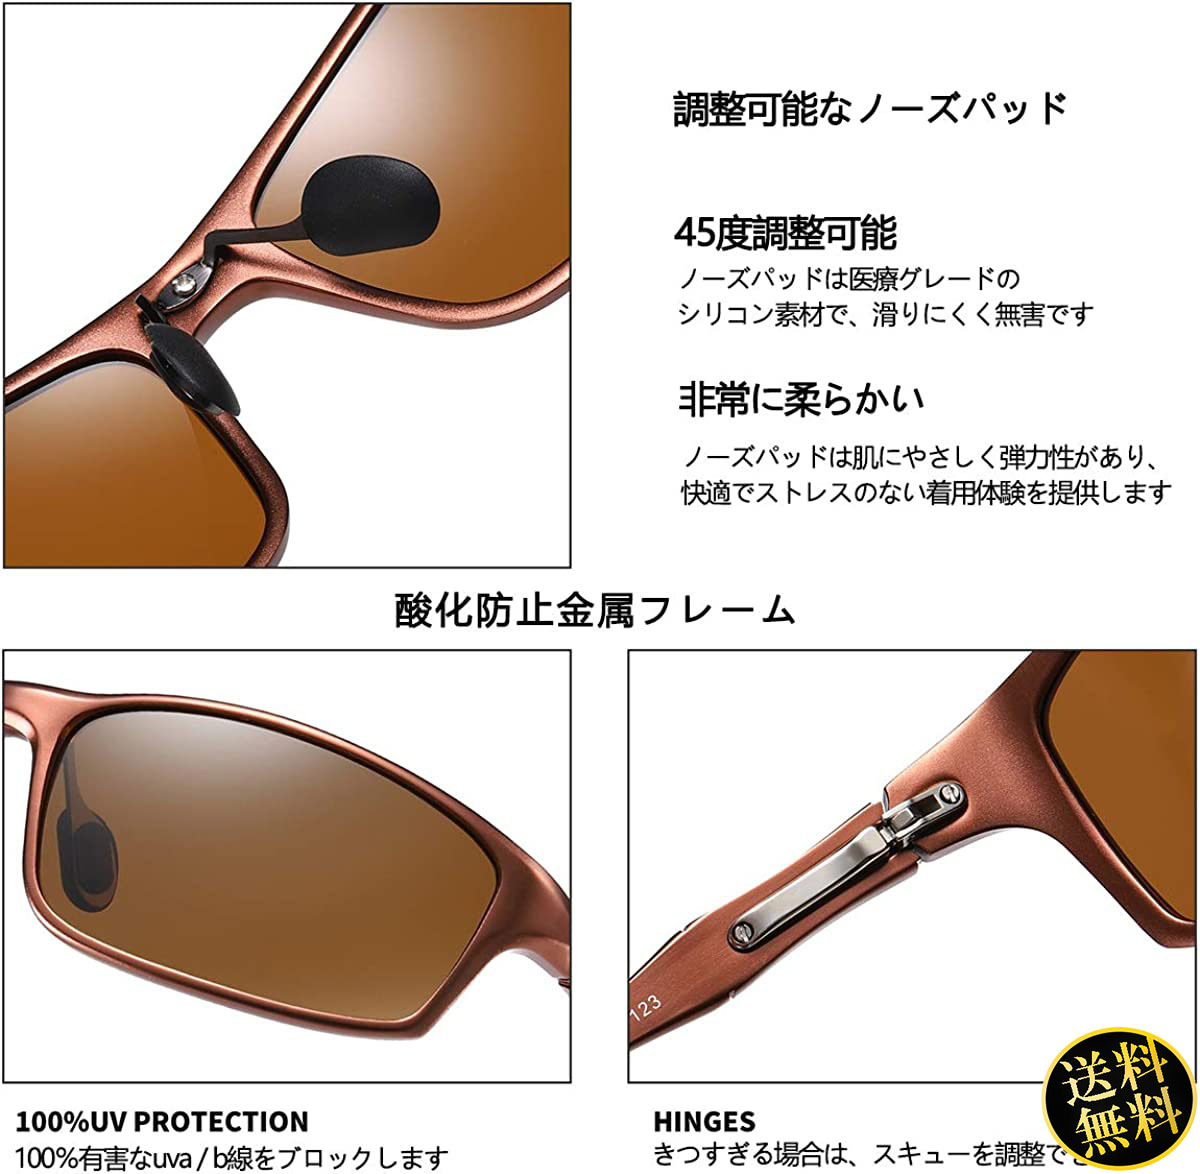 【初心者でも自然に着けられる】 ブラウン スポーツサングラス 軽量 TAC偏光レンズ 日本人設計 ファッション アウトドア ドライブ